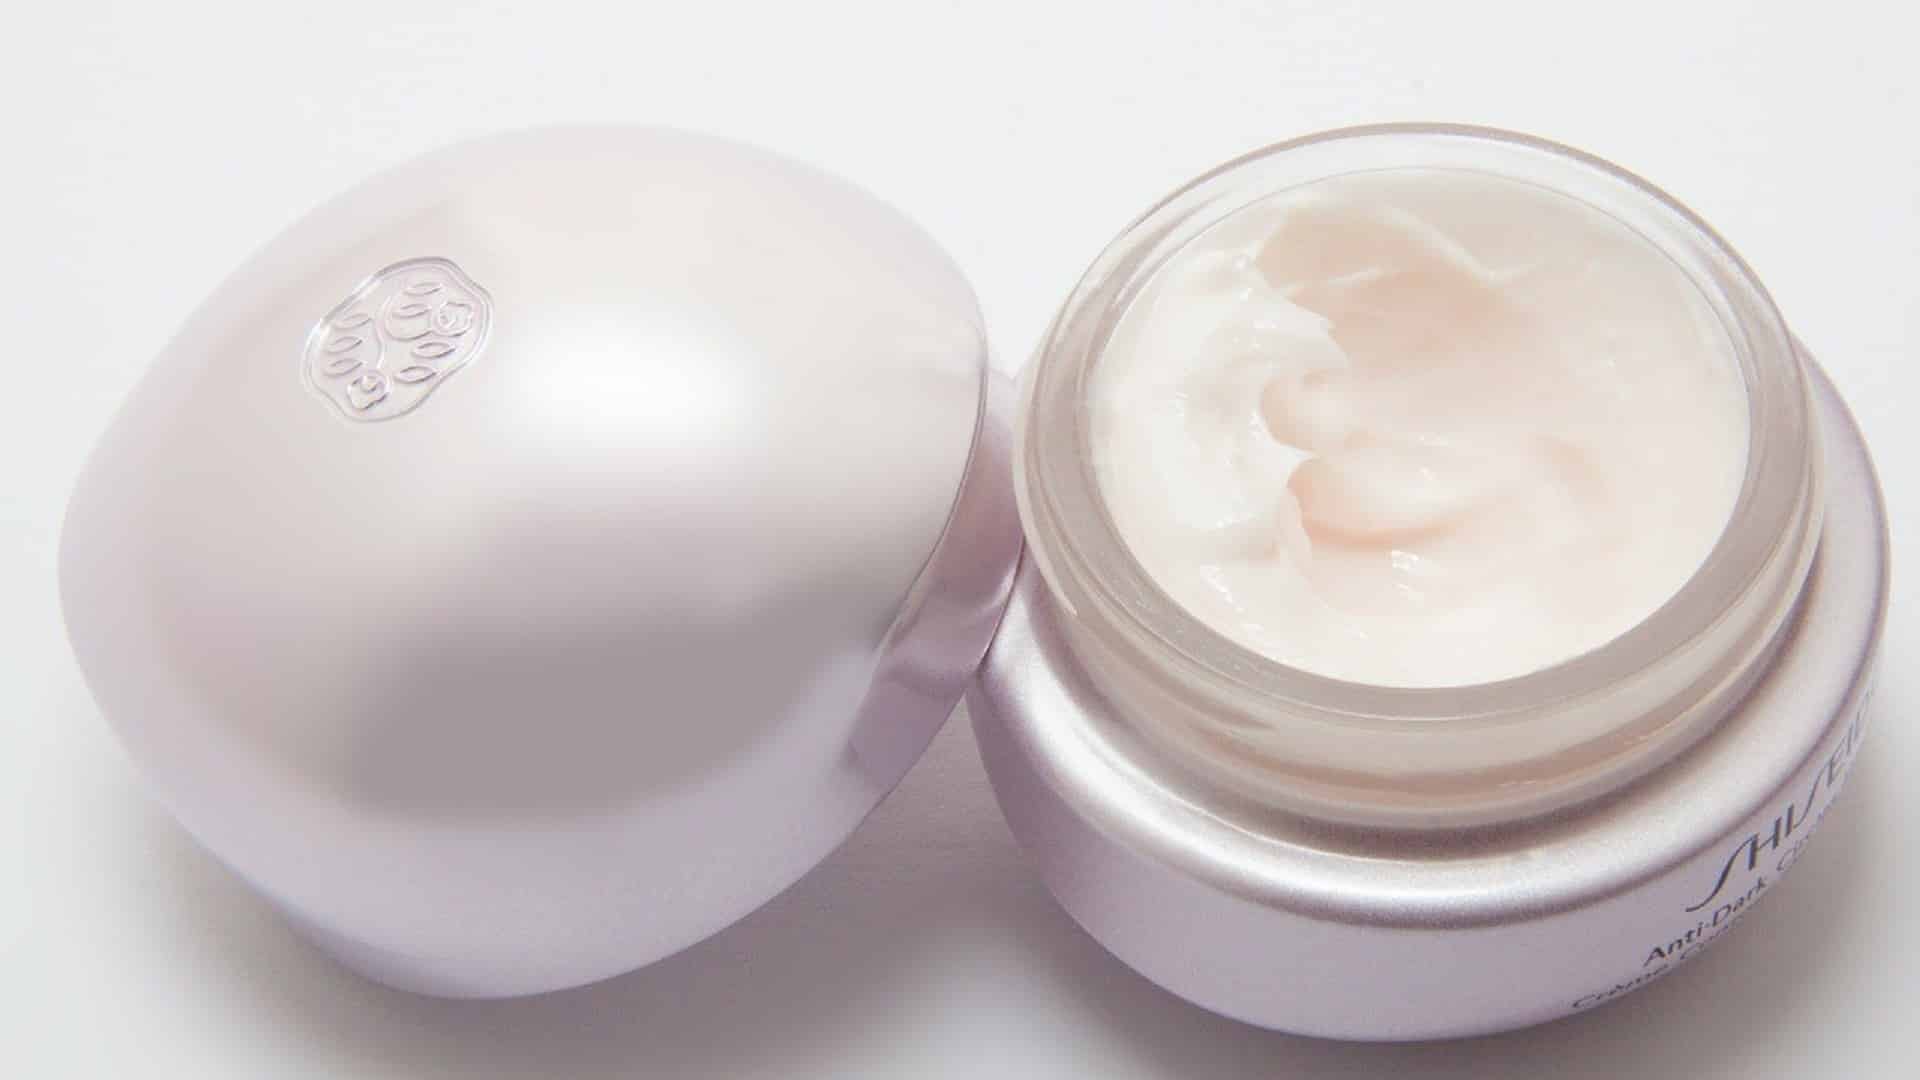 Our Top Beauty Picks for Best Korean Eye Cream